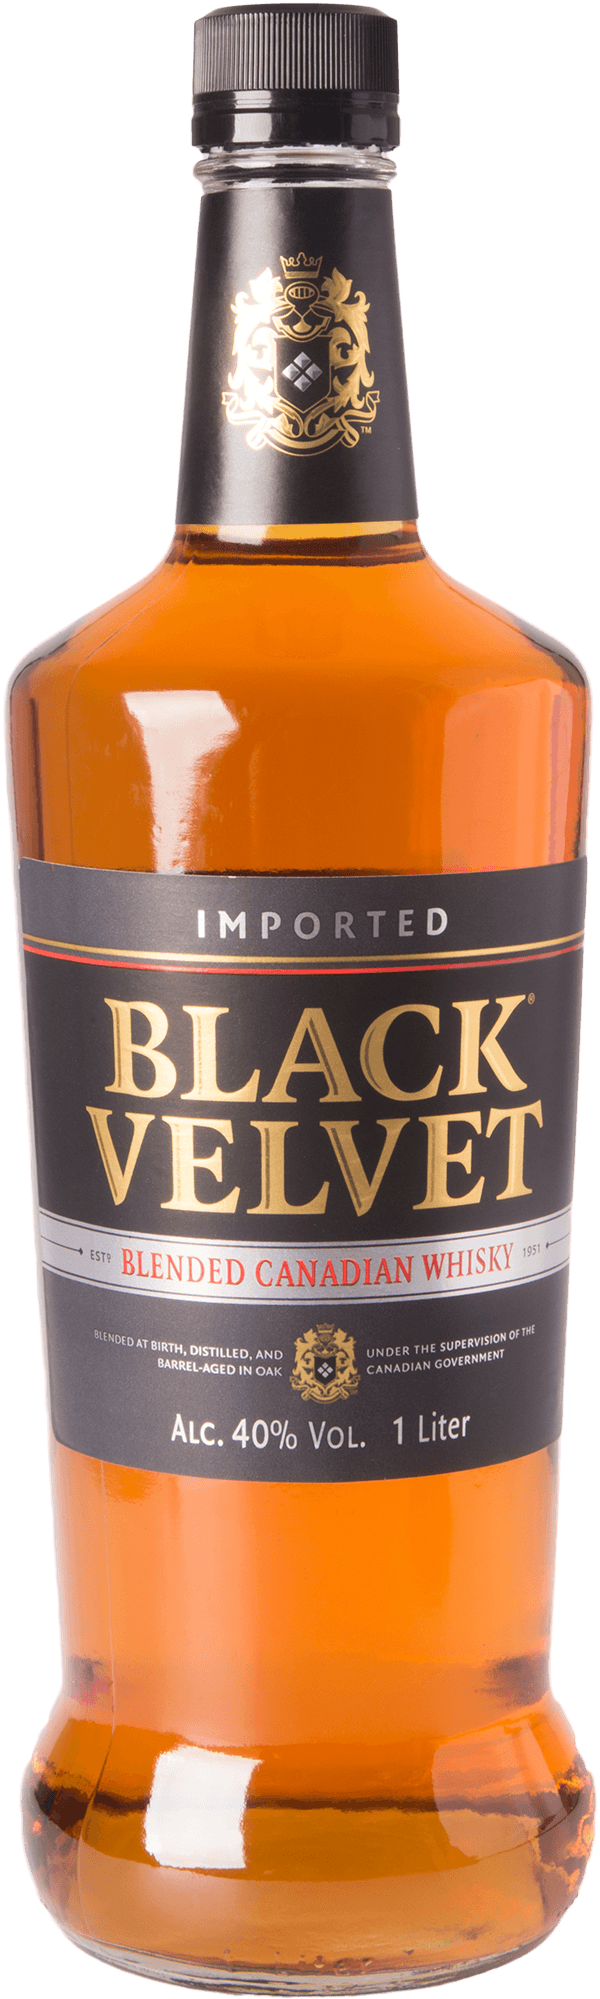 black-velvet-canadian-blended-whisky-40-prozent